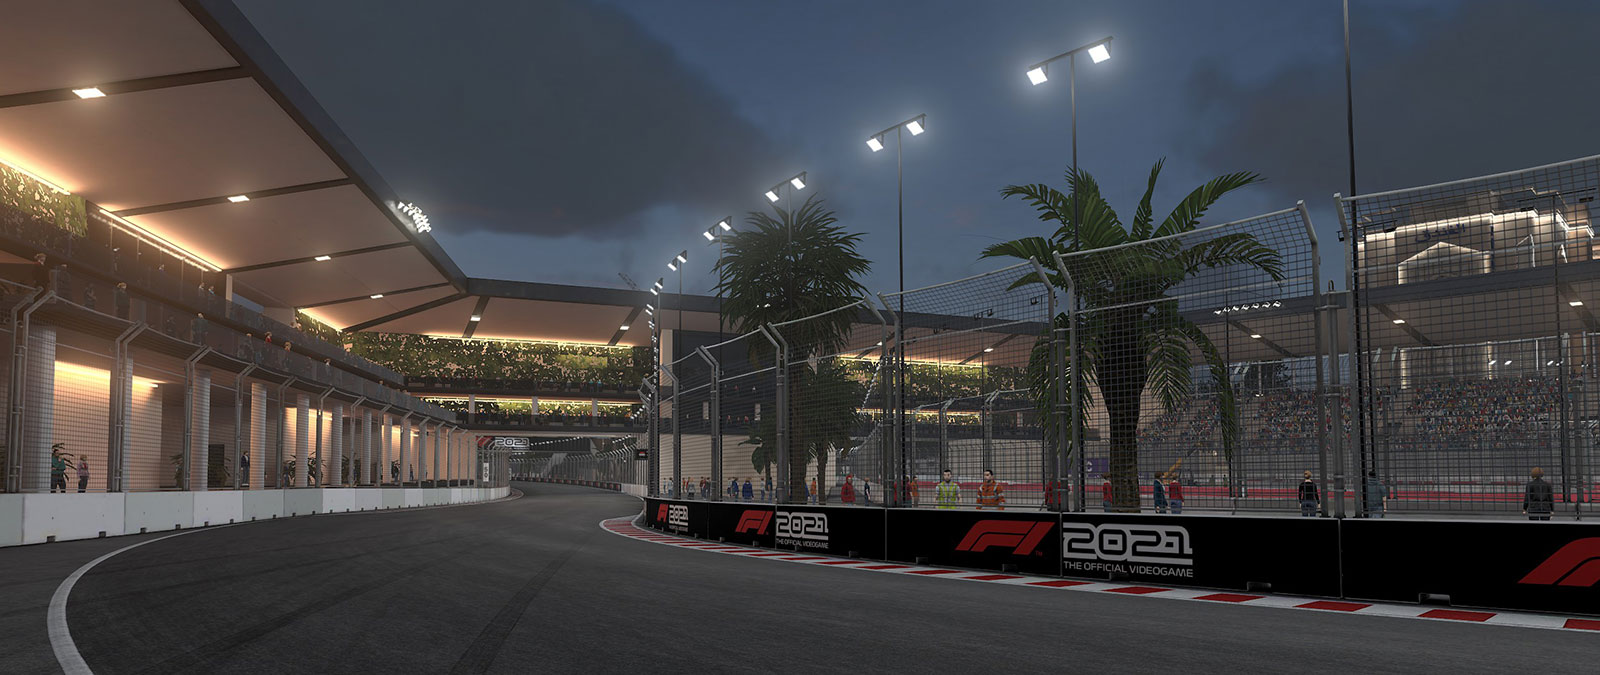 Justo después del atardecer, una pista de F1 está iluminada con farolas mientras los aficionados observan desde las gradas.